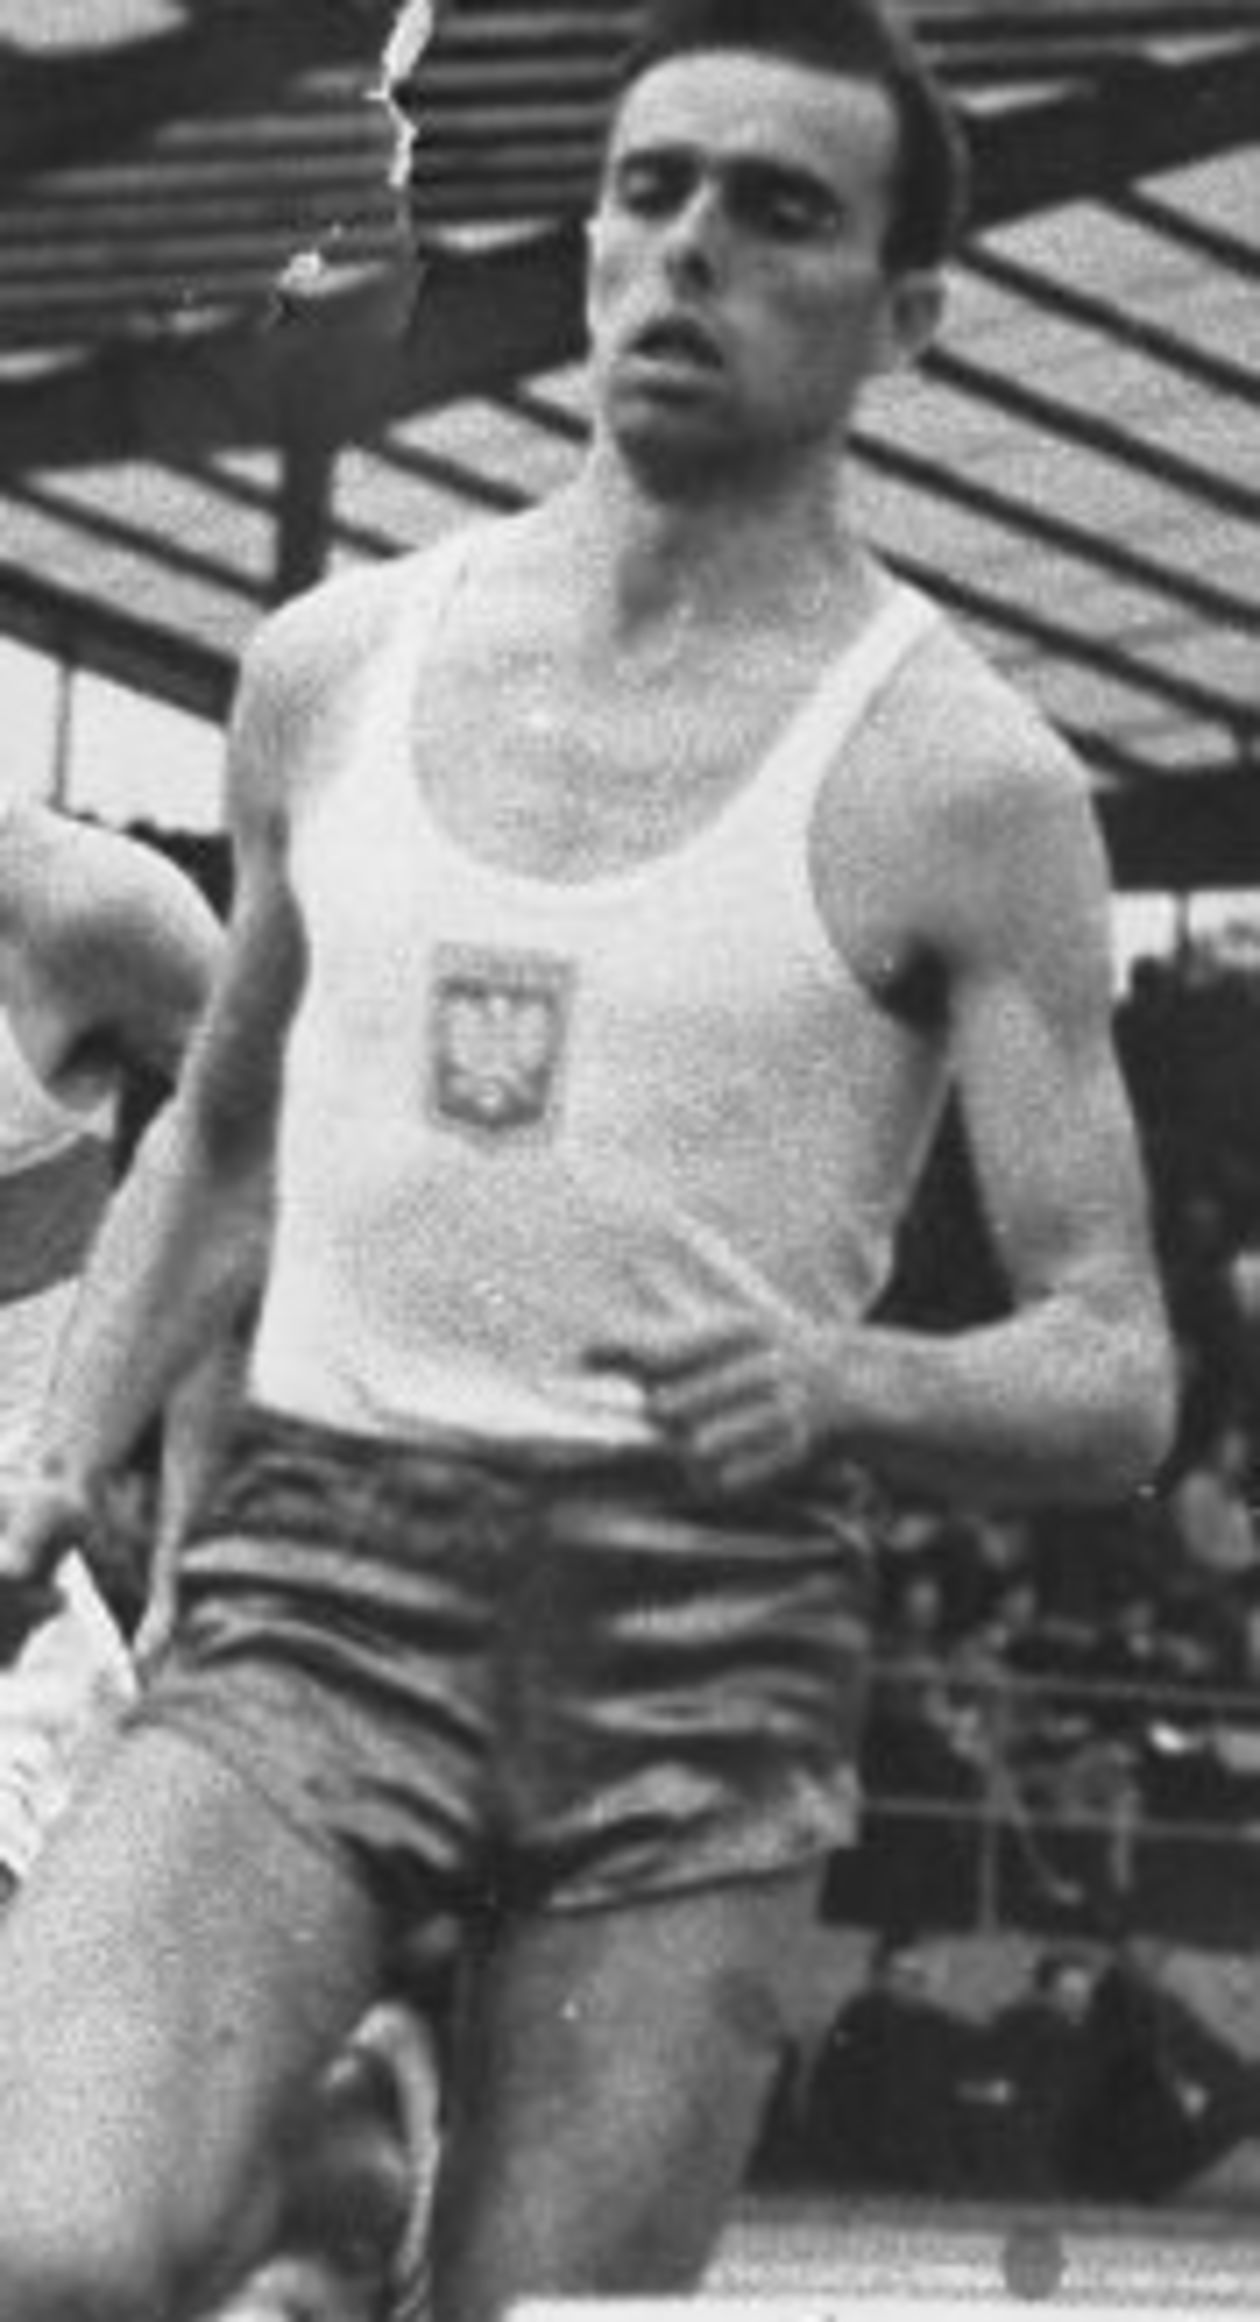  <p><strong>Listopad 2017</strong></p>
<p><strong>Henryk Maciąg</strong></p>
<p>Zmarł w wieku 76 lat. Był rekordzistą okręgu, reprezentantem Polski w biegach średnich. Mistrz Polski w sztafecie 4 x 400 m w 1962 roku oraz w biegu na 800 m w 1963 r.</p>
<p>Spoczął na cmentarzu przy ul. Lipowej w Lublinie.&nbsp;</p>